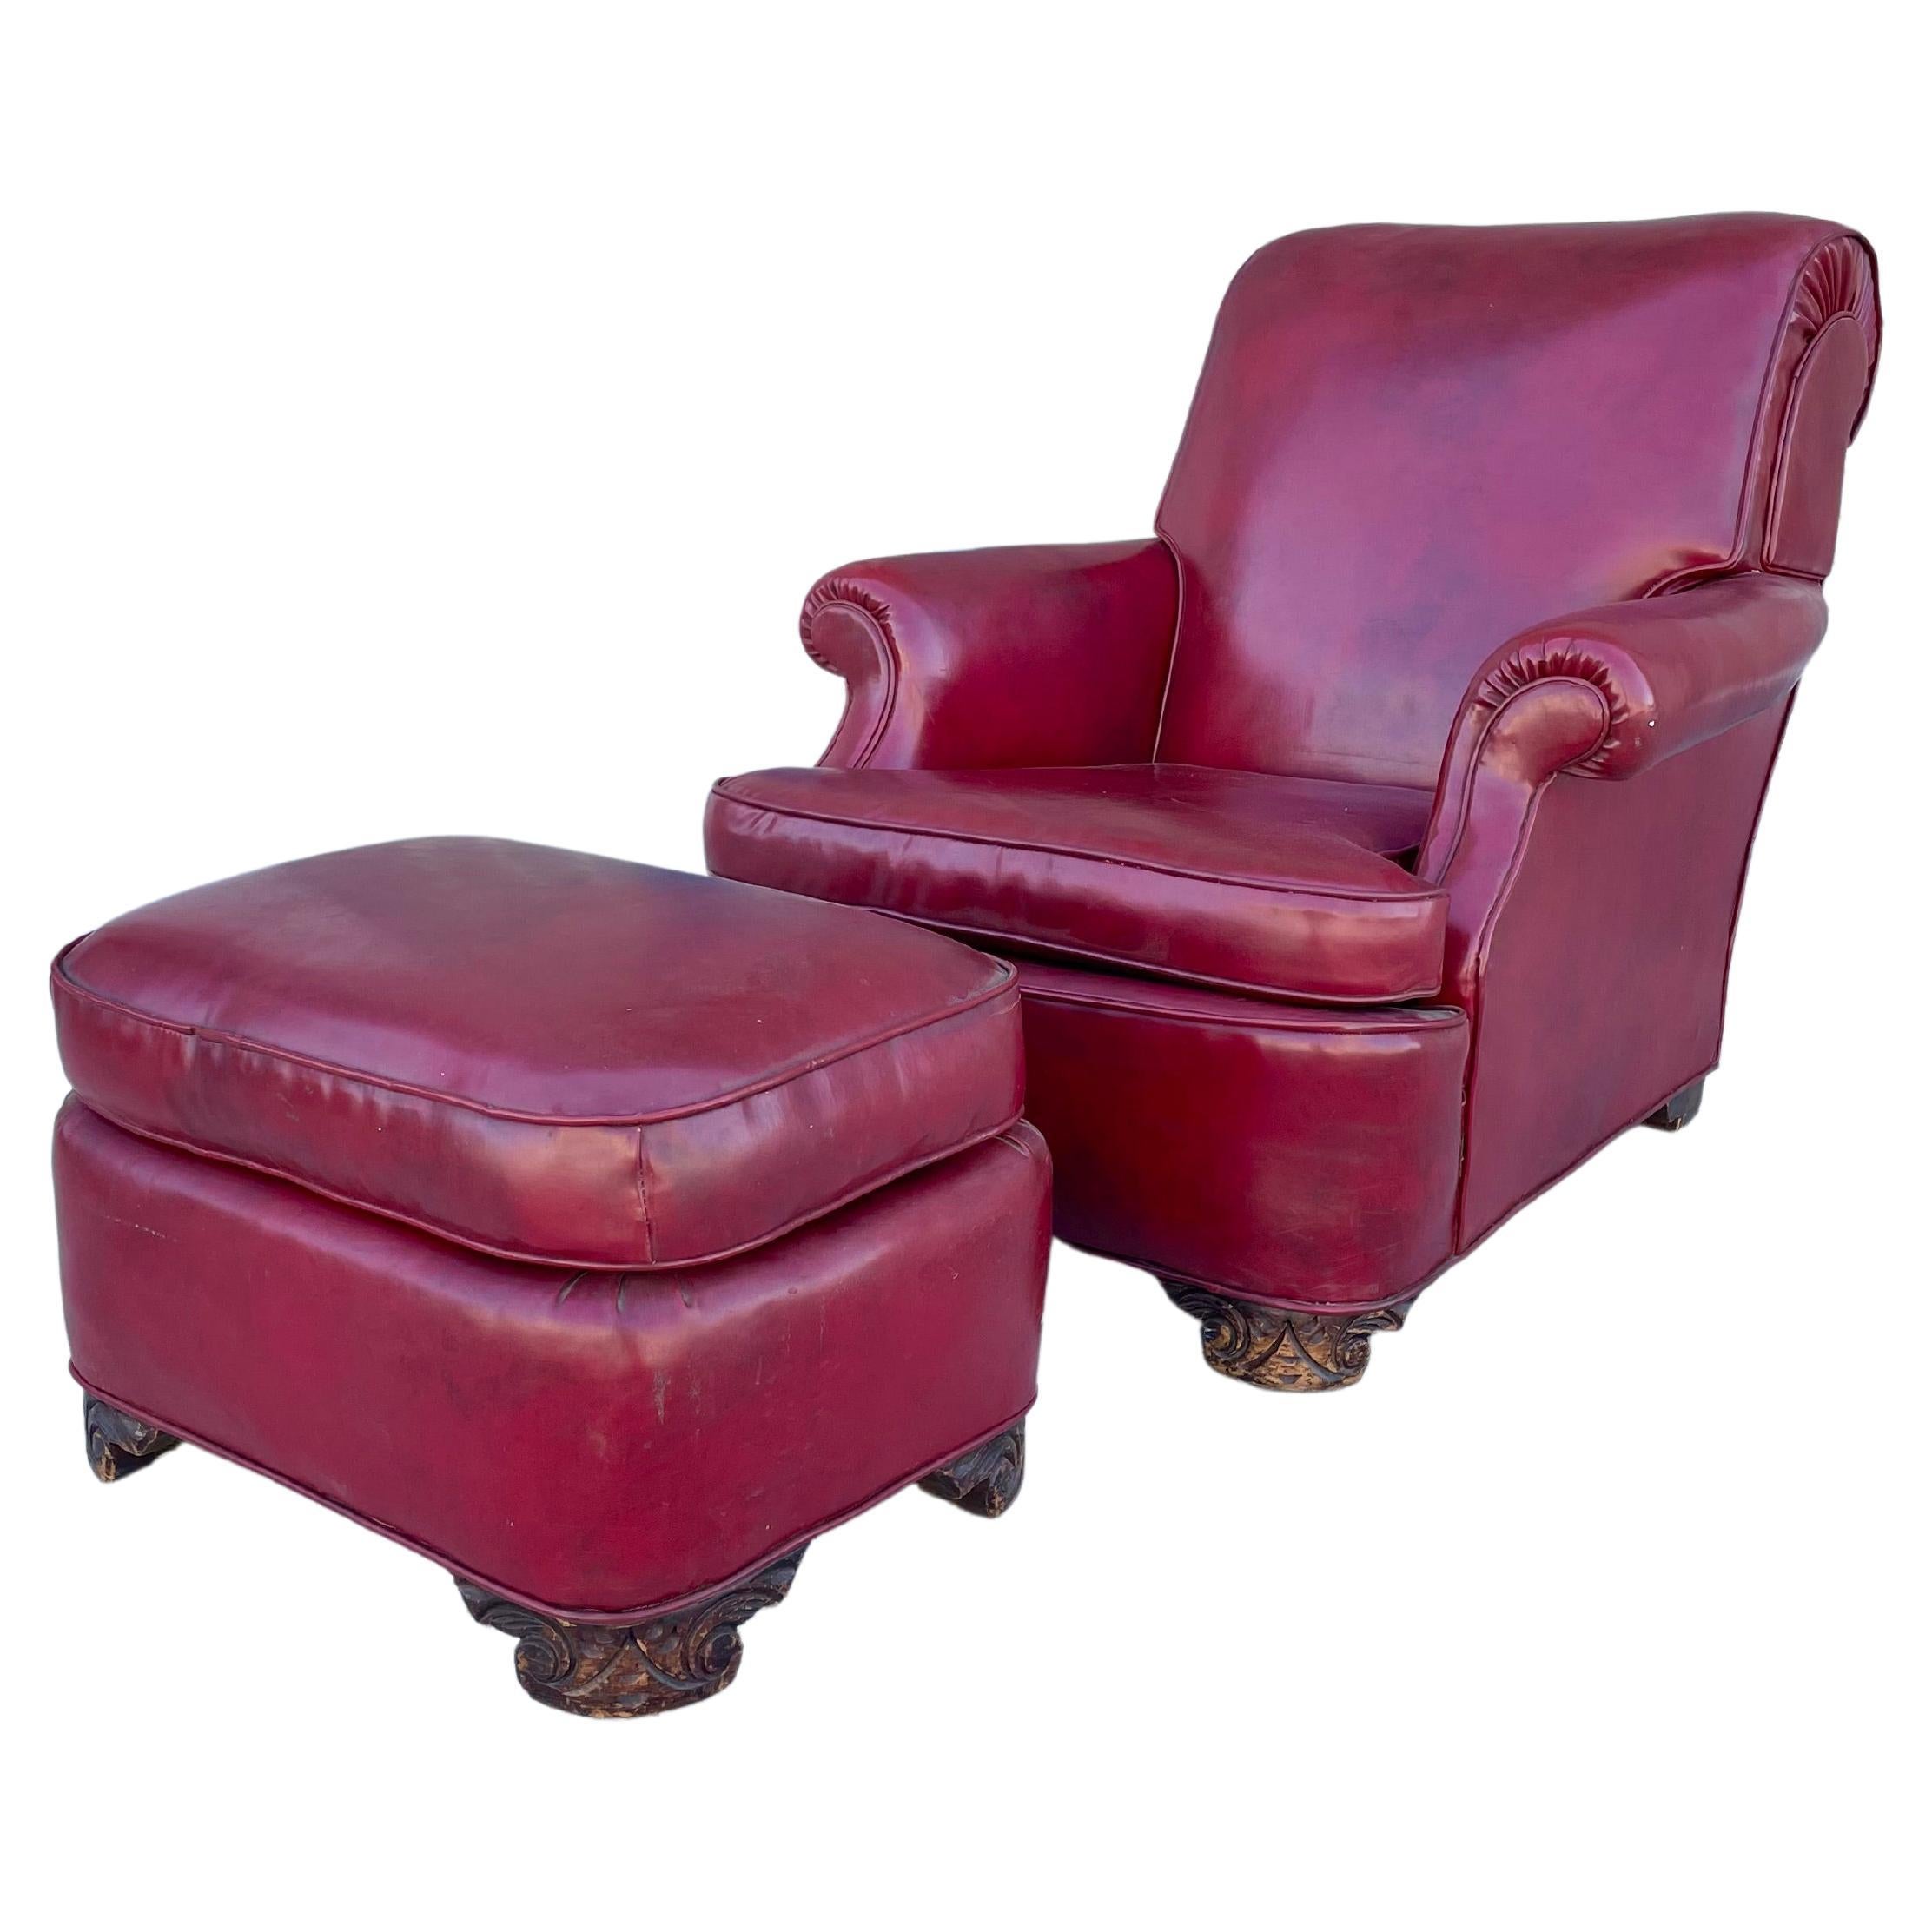 Chaise et pouf en cuir des années 1950 - Lot de 2